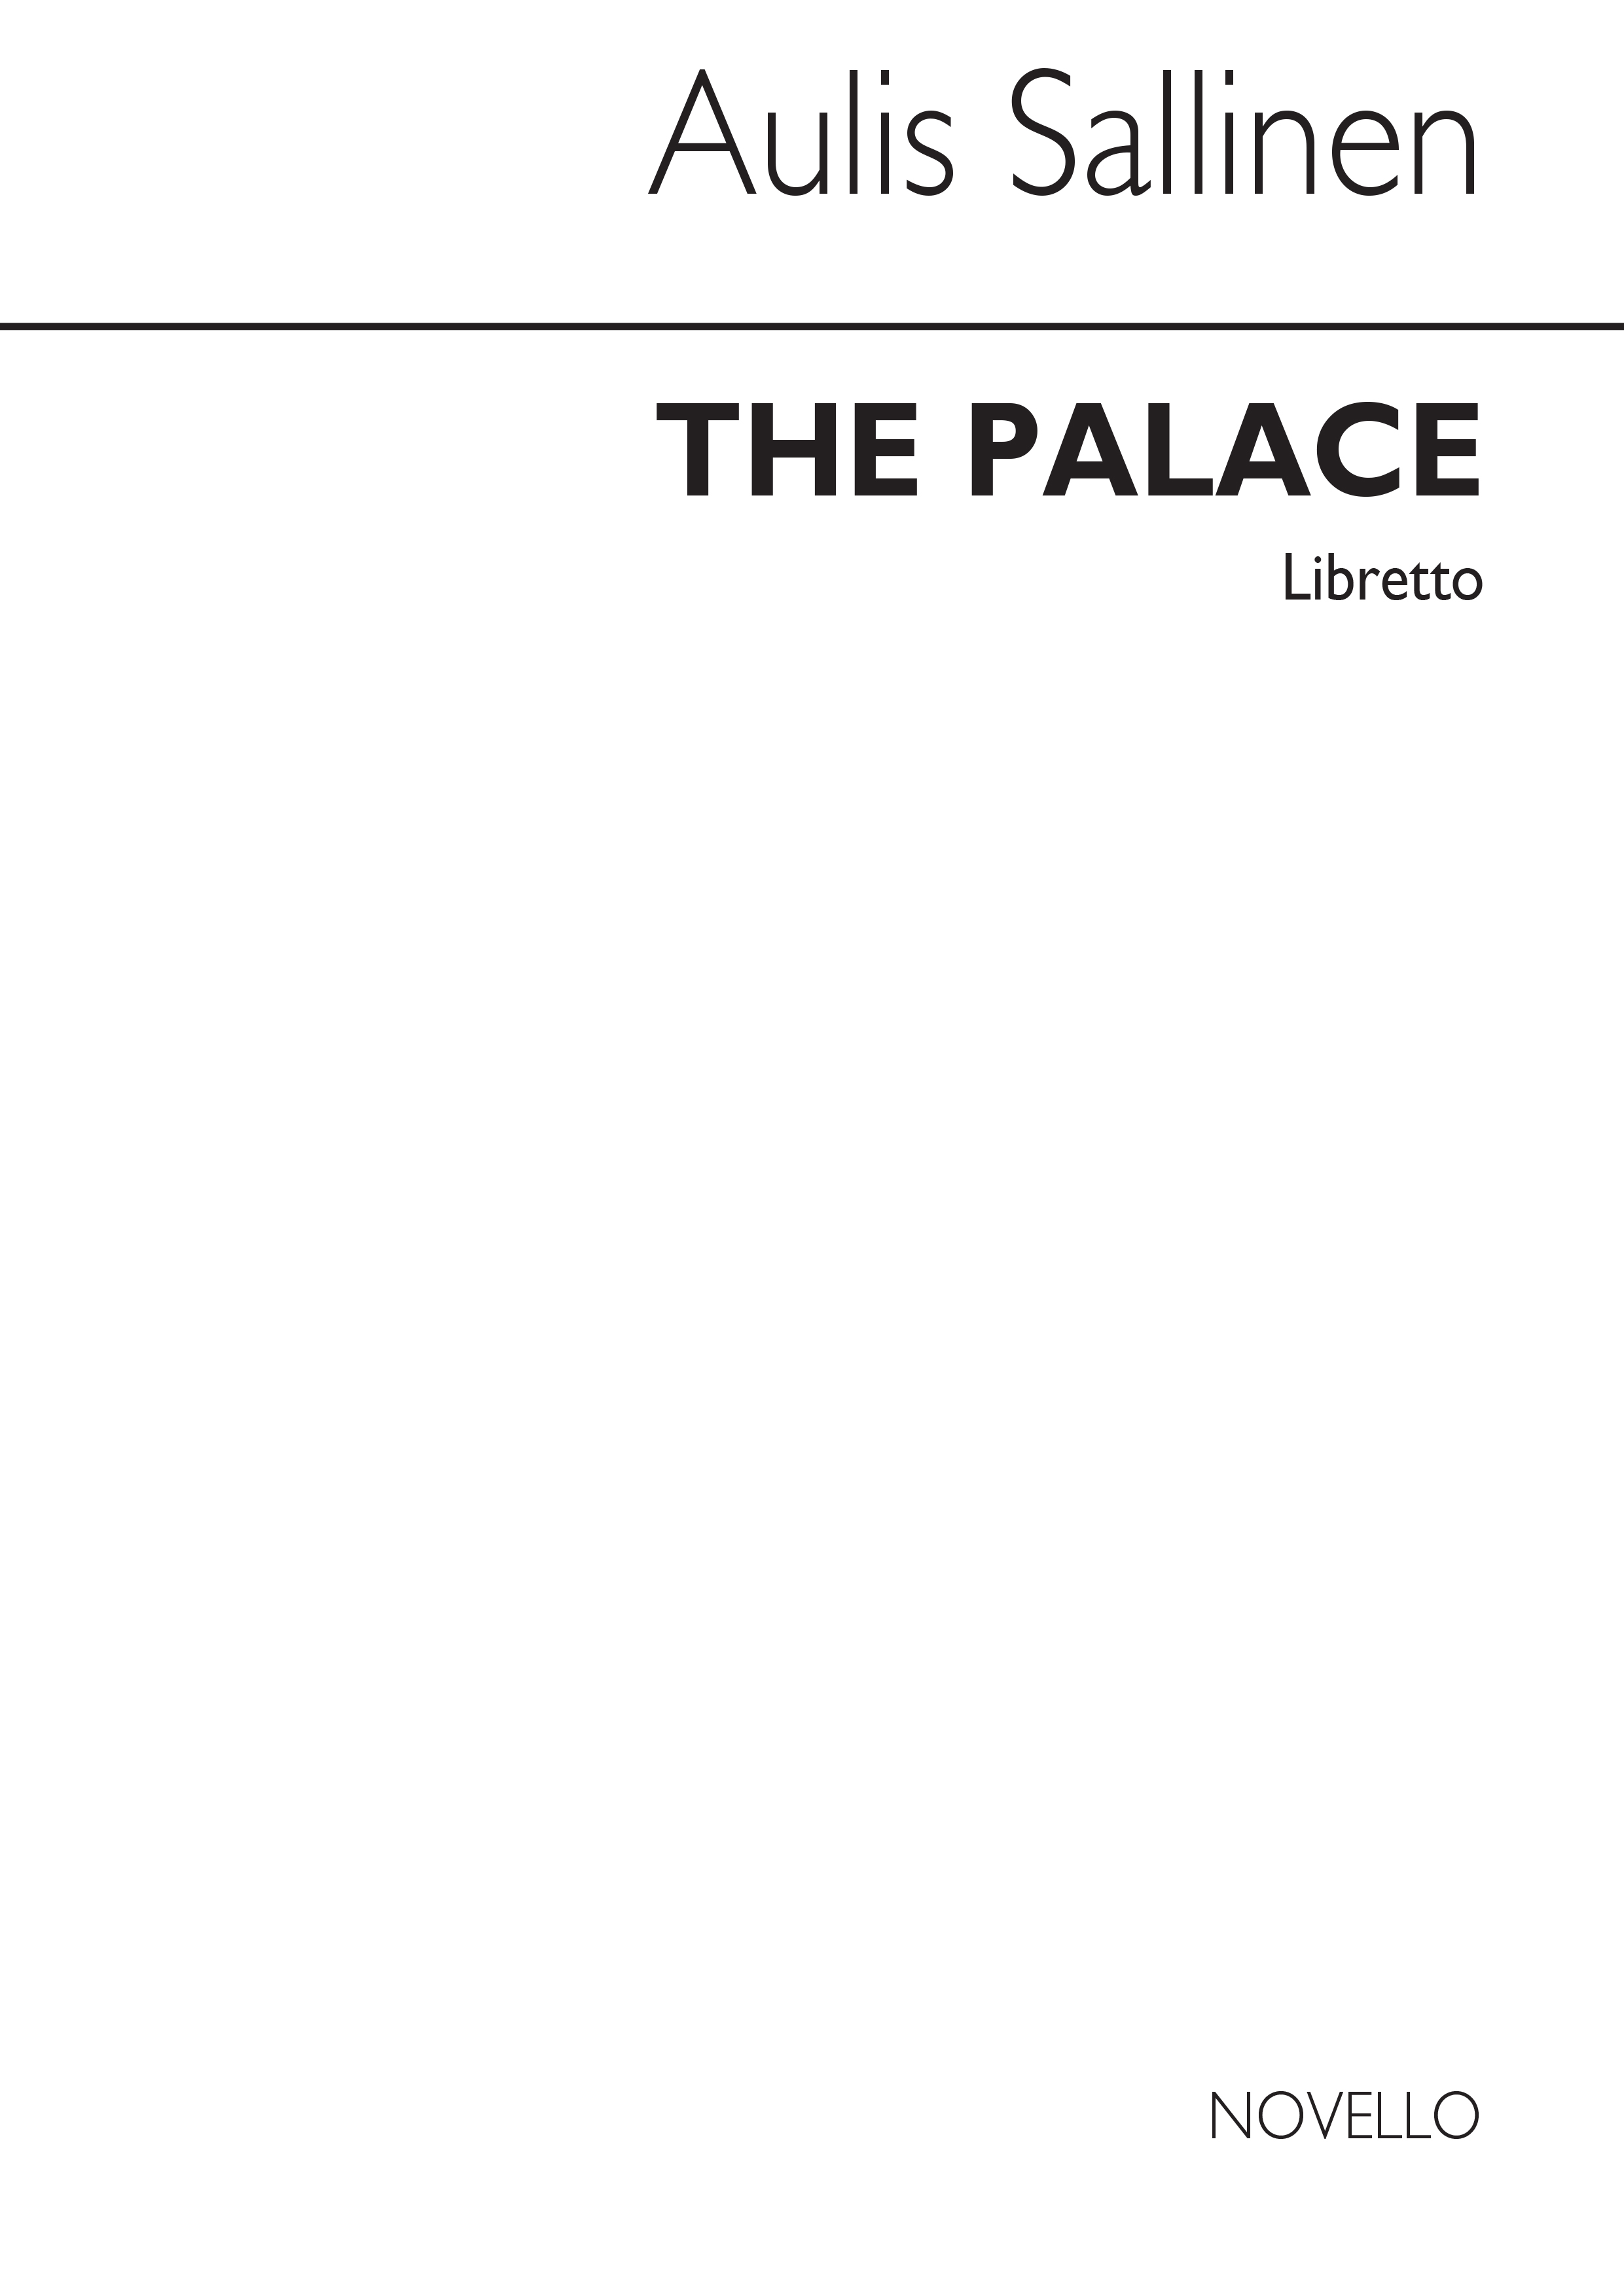 Aulis Sallinen: The Palace Opera (Libretto): Opera: Libretto